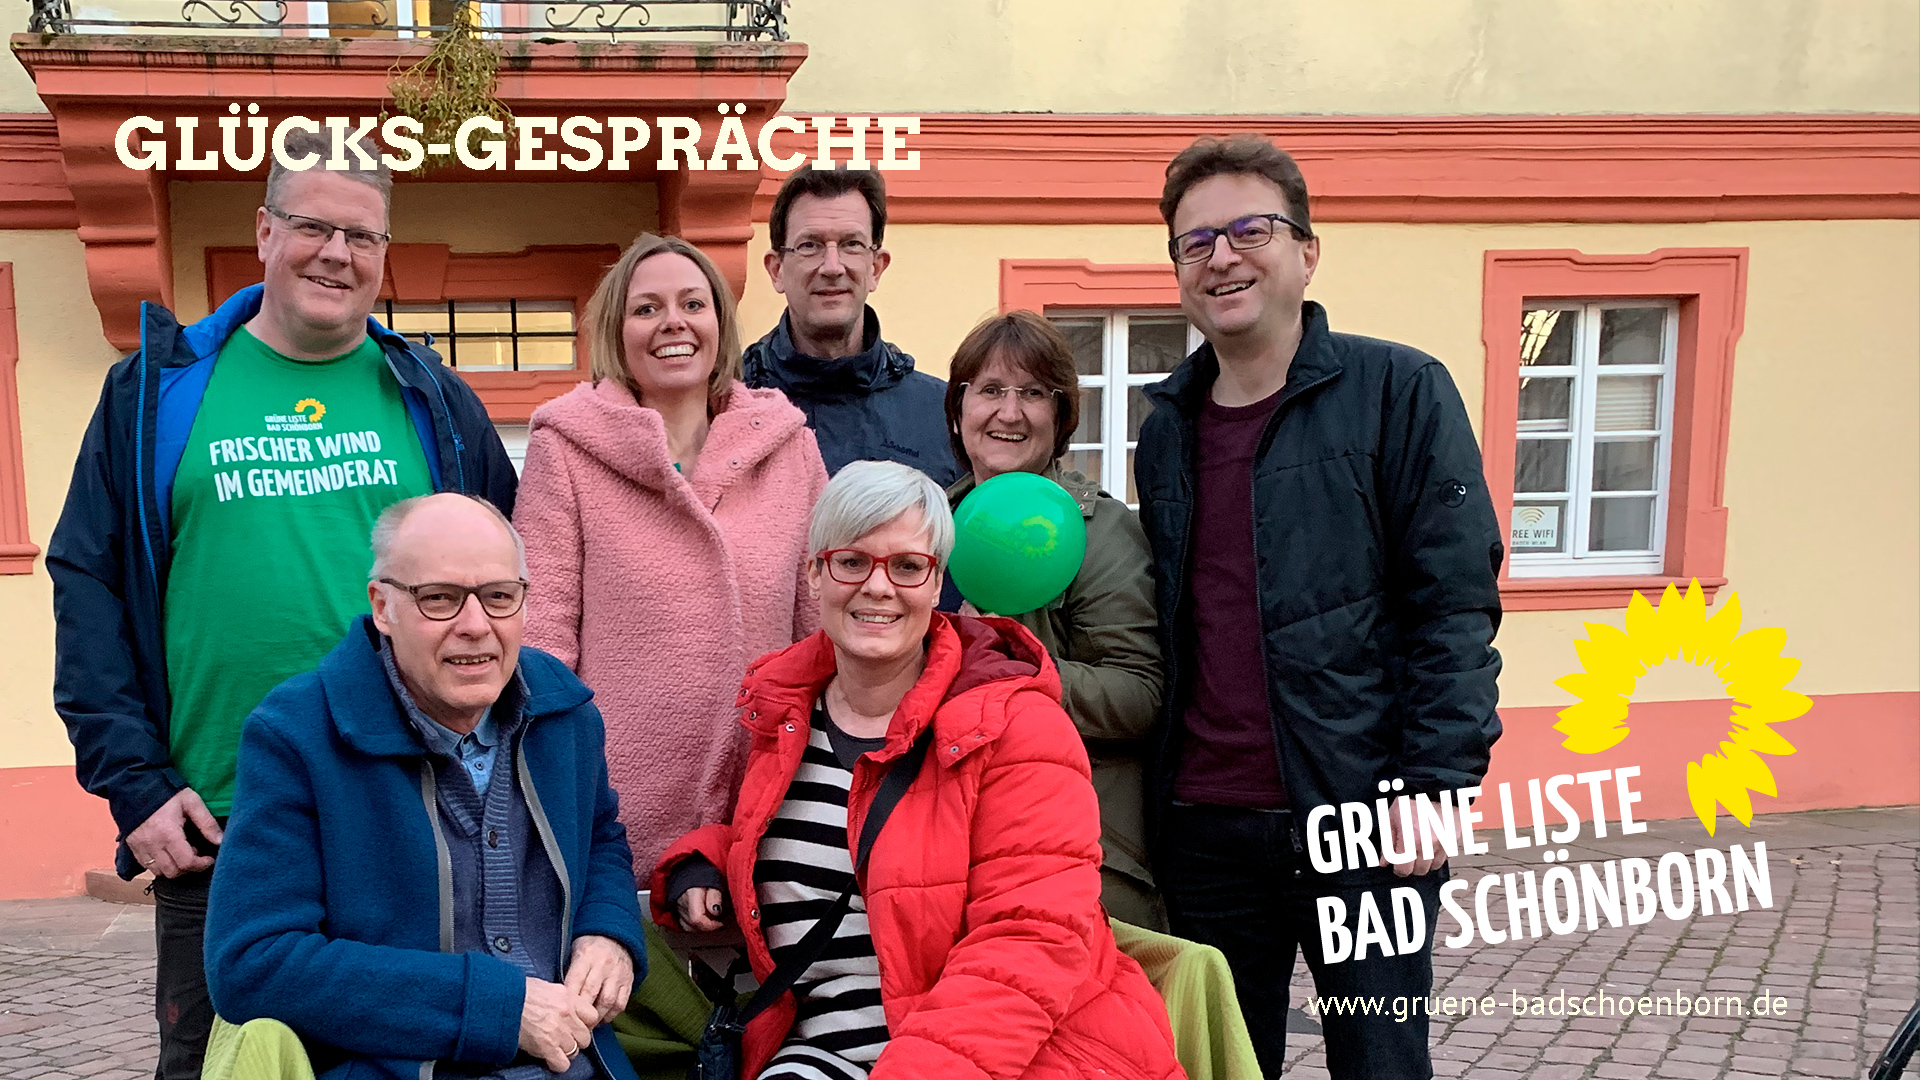 Glücksgespräche der Grünen Liste am 20. März 2019 auf dem Marktplatz Mingolsheim